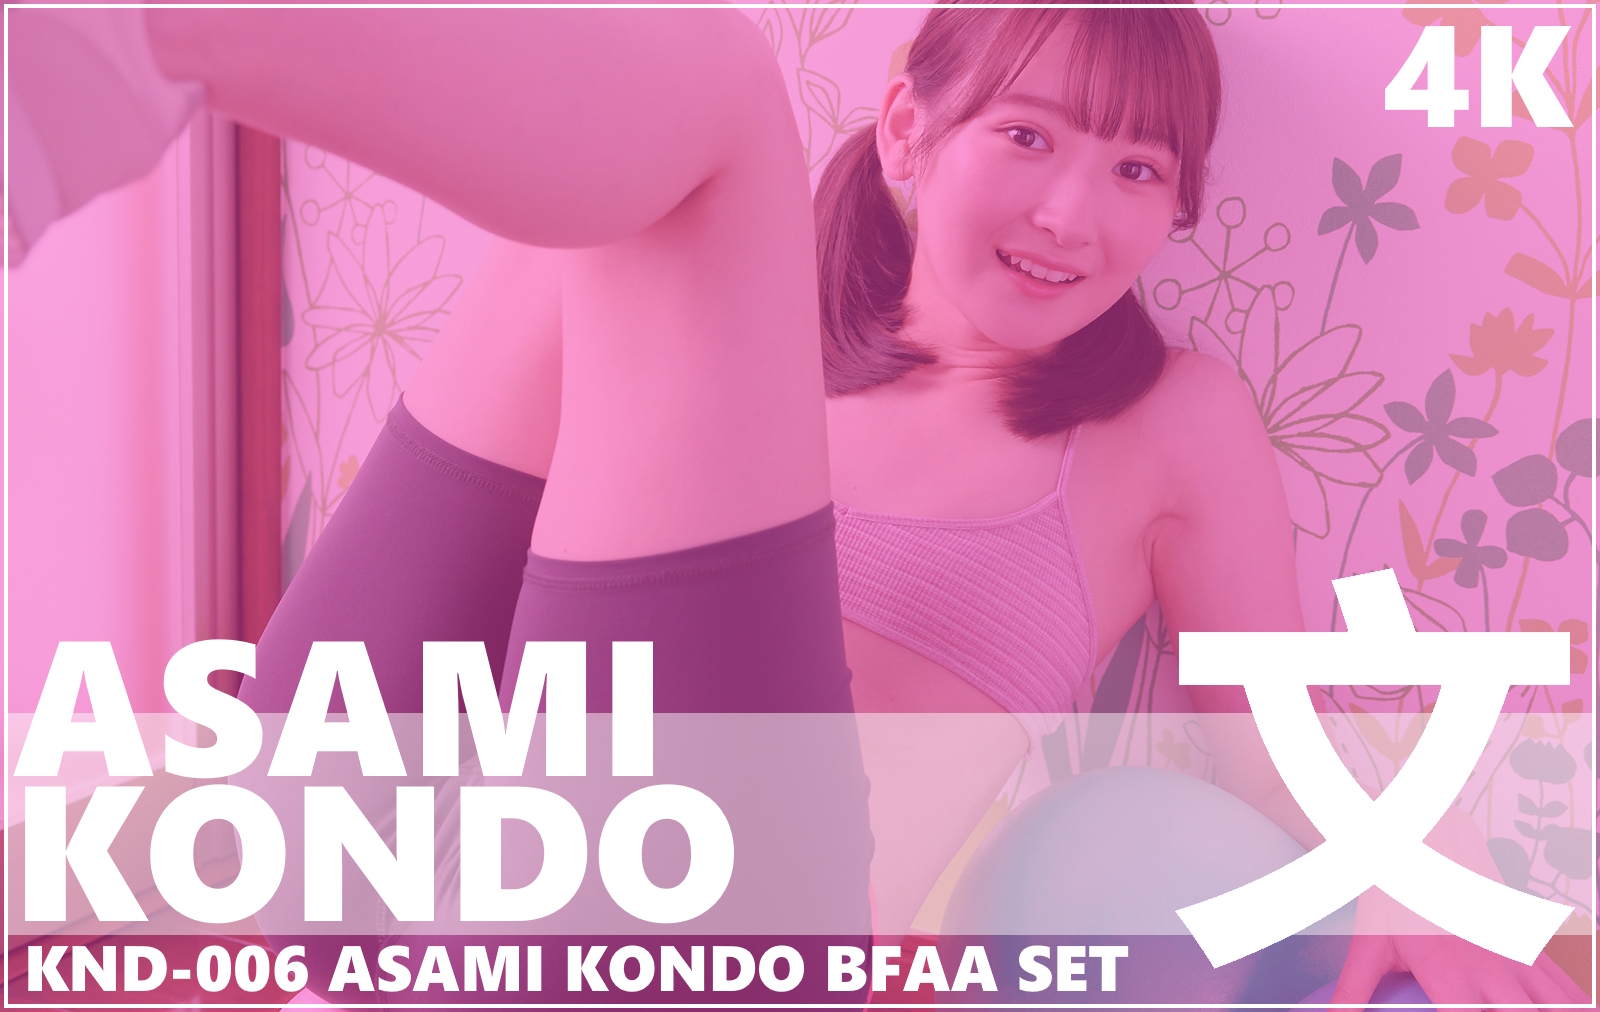 KND-006 Asami Kondo 4K BFAA Set